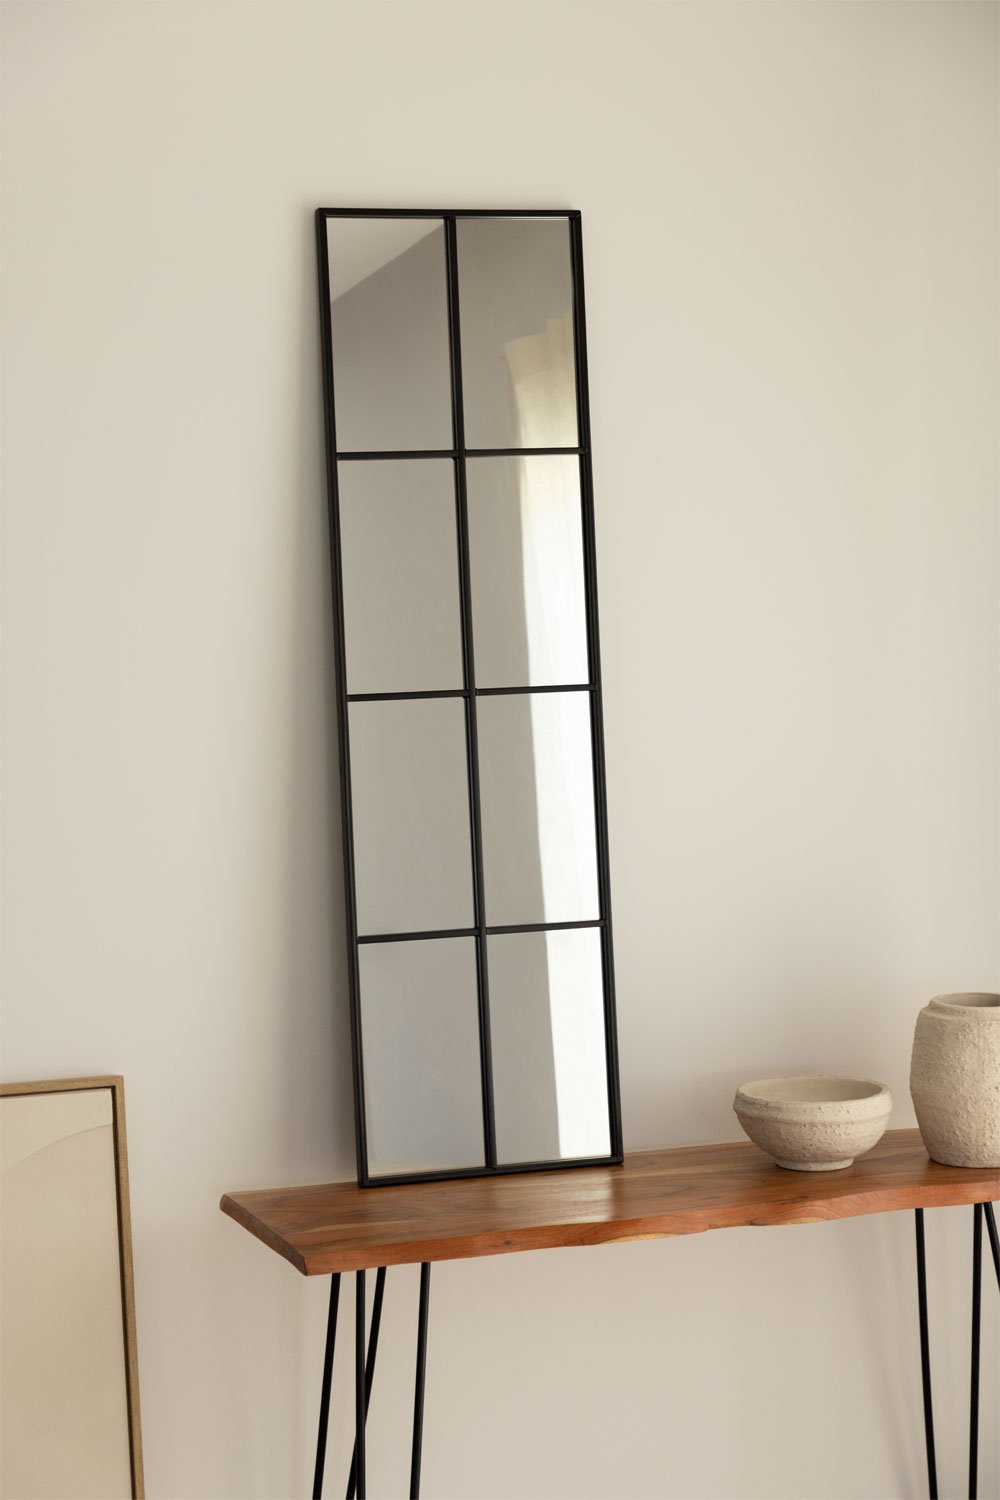 Specchio da Parete in Metallo Effetto Finestra (132x38 cm) Rania, immagine della galleria 1